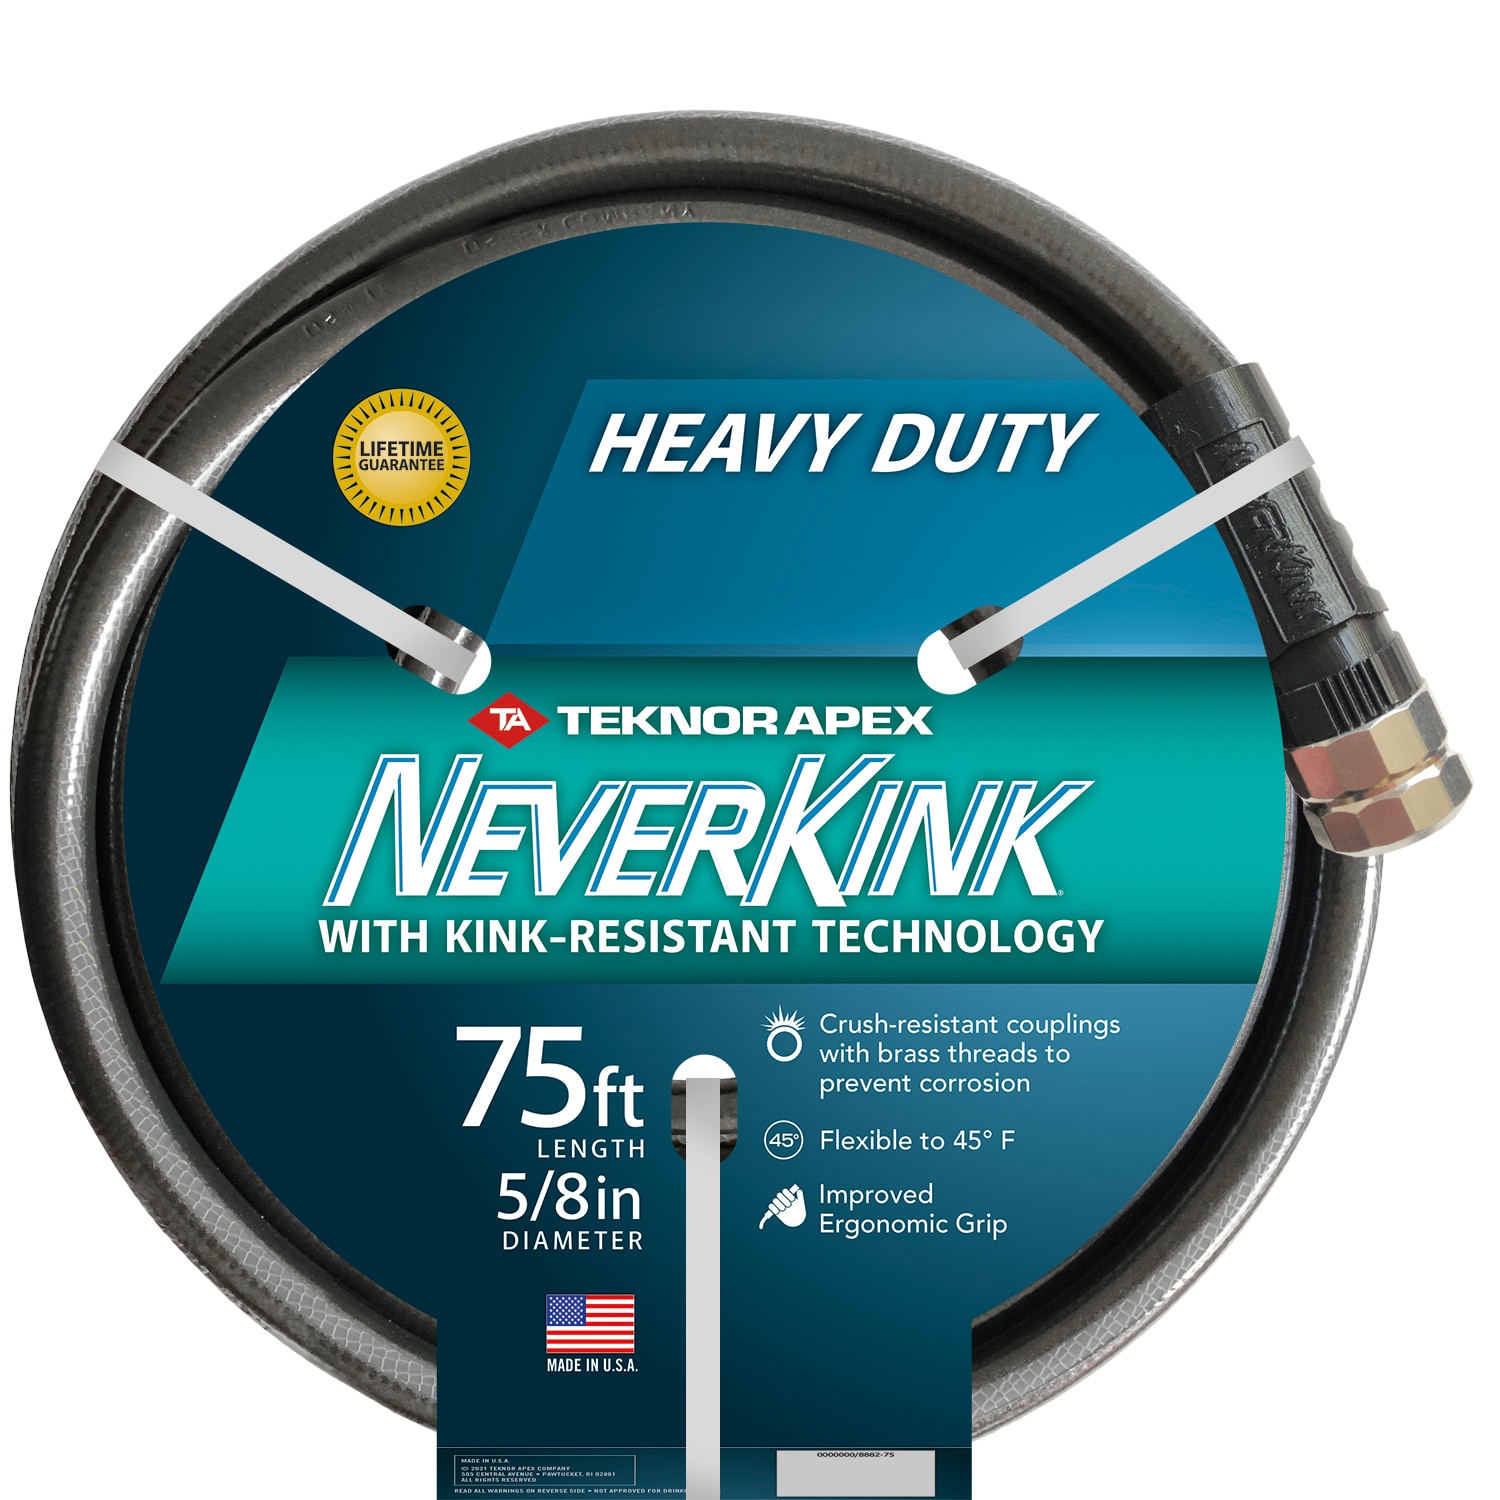 Heavy Duty Neverkink Commercial Outdoor Dia x75 ft Garden Water Hose 5/8 in